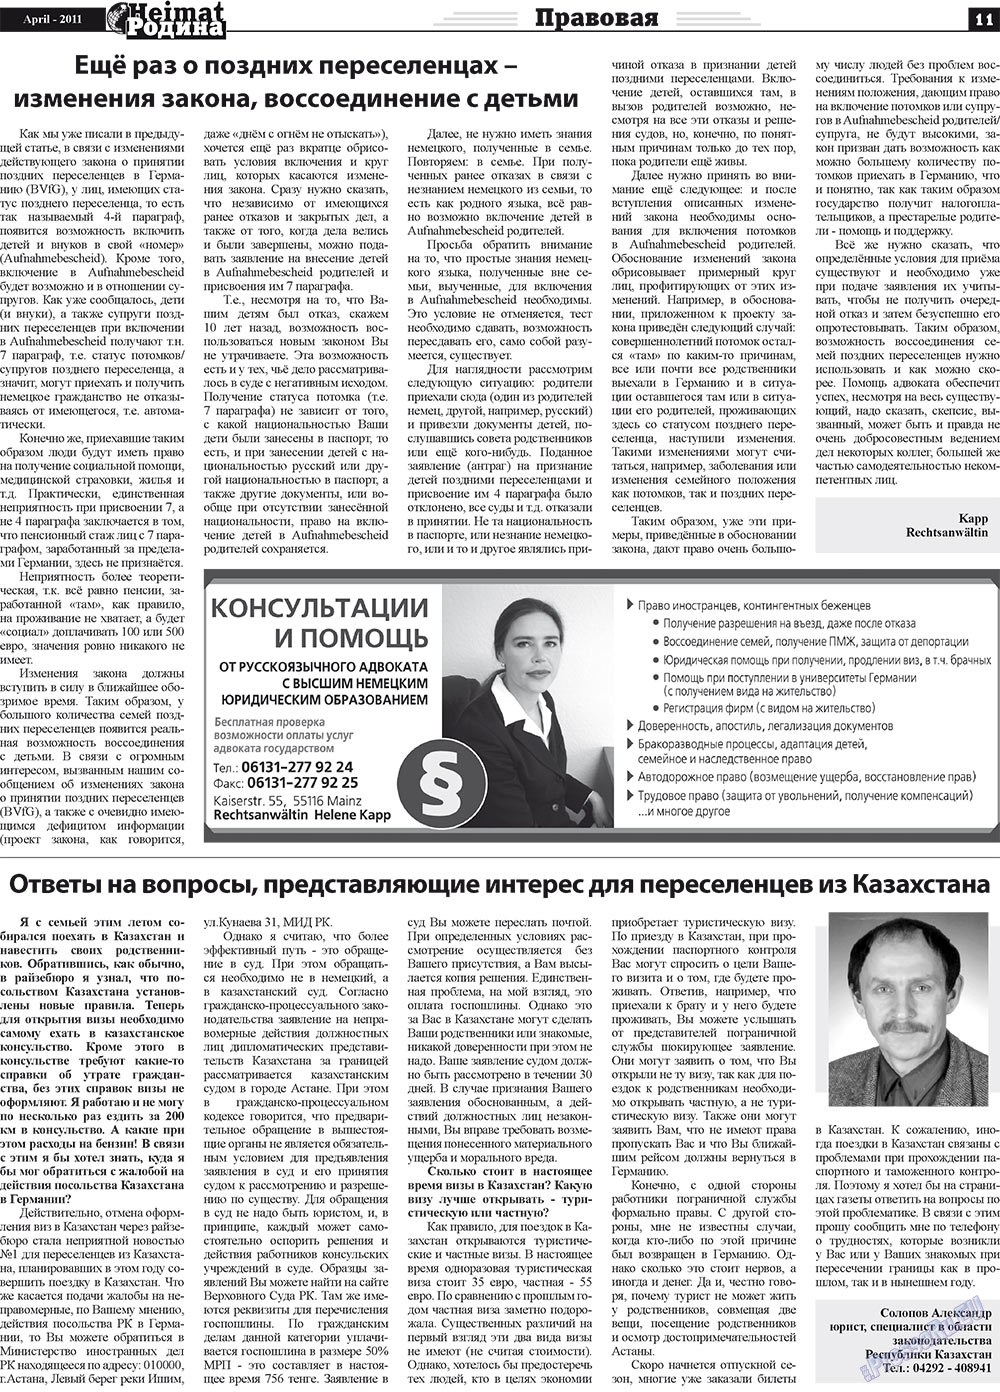 Heimat-Родина (газета). 2011 год, номер 4, стр. 11